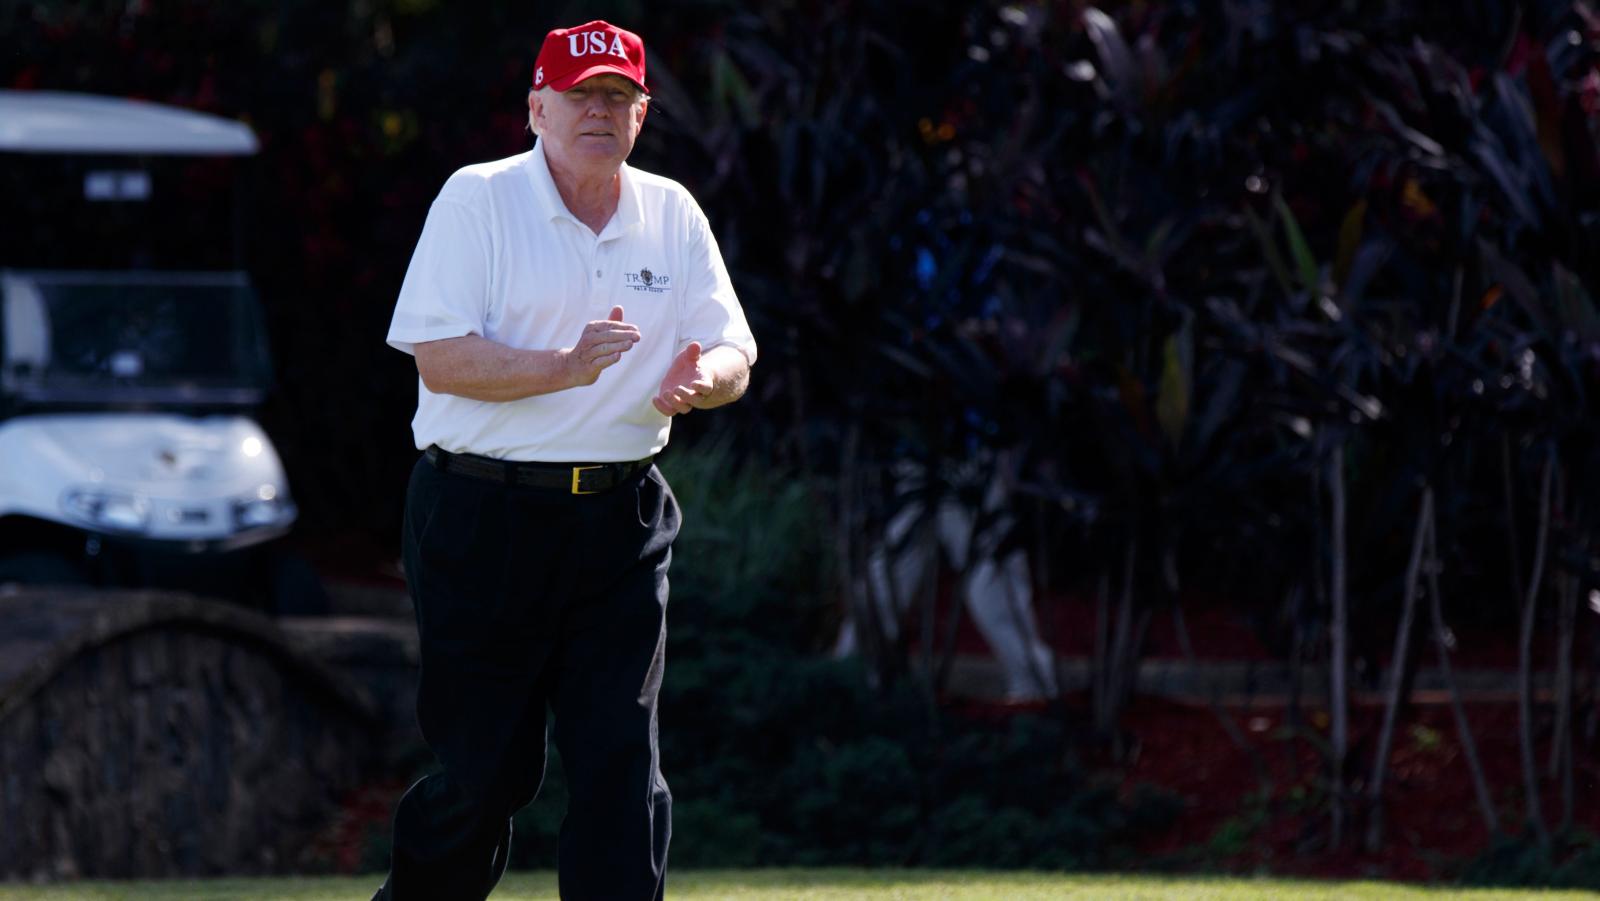 Vừa thông báo tình trạng khẩn cấp Quốc gia, Donald Trump đã thảnh thơi tại sân golf riêng?